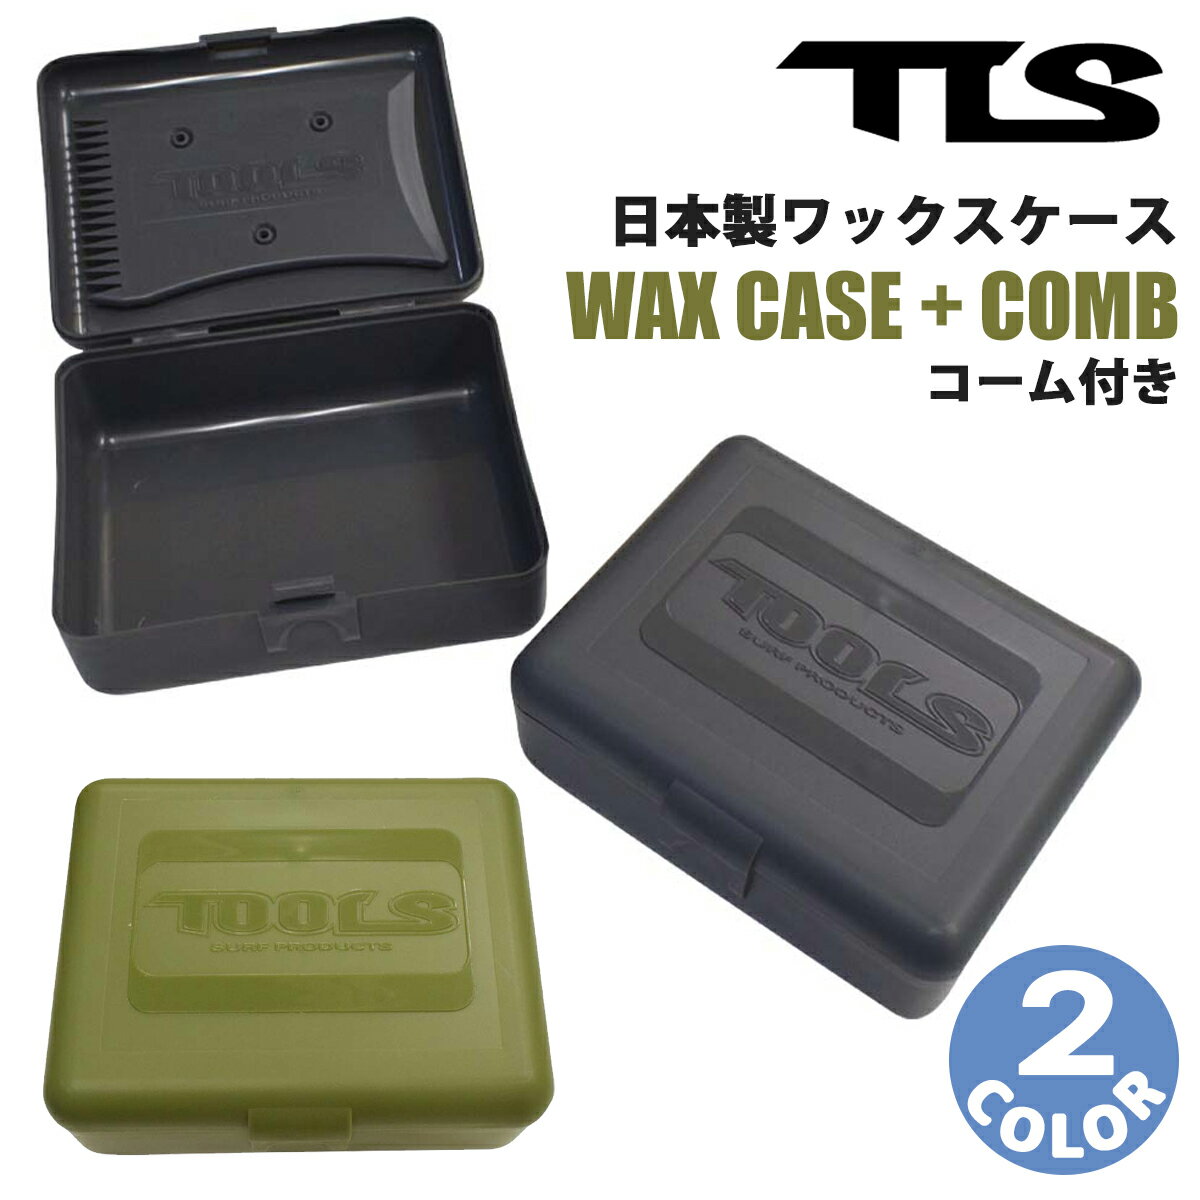 TLS WAX CASE + COMB｜日本製ワックスケース ・四角タイプ ・サーフワックス1個 収納用 ・アクセサリーなど小物入れとしても使える ・TLSオリジナルコーム付属 ・コームはワンタッチで取付・取り外しが可能 ・日本製 ■ サイズ（約） ケースサイズ 外寸（最長部）：9.8cm × 8.2cm × 3.8cm 内寸（最短部）：8.9cm × 6.9cm × 3cm コームサイズ：5.7cm × 8.5cm スクレーパー部 ・ストレートエッジ 7.7cm ・カーブエッジ 5.5cm ・ギザギザエッジ 5.1cm ■カラー： CHARCOAL(チャコール) OLIVE(オリーブ) ※ワックスは付属いたしません。予めご了承ください。 ※クレジットカード/銀行振り込み/楽天(etc)決済など、15時までに決済完了の場合は即日発送！(※15時以降の決済確認は翌日以降ご入金確認後の発送） ○デザイン等、予告なしに変更となる場合があります。ご了承ください。 ○掲載商品の色は、できる限り現品と同じになるよう努めておりますが、ご使用のパソコン環境により多少色合いが異なる場合がございます。著しい色の相違は御座いませんのでご安心ください。 〇商品ページに記載のカラー表記ですが、カタログやJANコード作成時などにメーカーで割り当てたカラー表示となり実際の商品と色味が異なる場合がございますが予めご了承下さい。 〇また柄物商品の場合などは、商品により柄の位置や入り方に個体差が生じてしまいます。商品ページの写真とイメージが異なる場合がございますが予めご了承下さい。 ○お急ぎのお客様は、ご確認していただく事をお勧め致します。 ※コチラの商品は小型宅配便での発送となります。 『あす楽対応』となりますが送料込みの値段となりますのでご了承下さい。